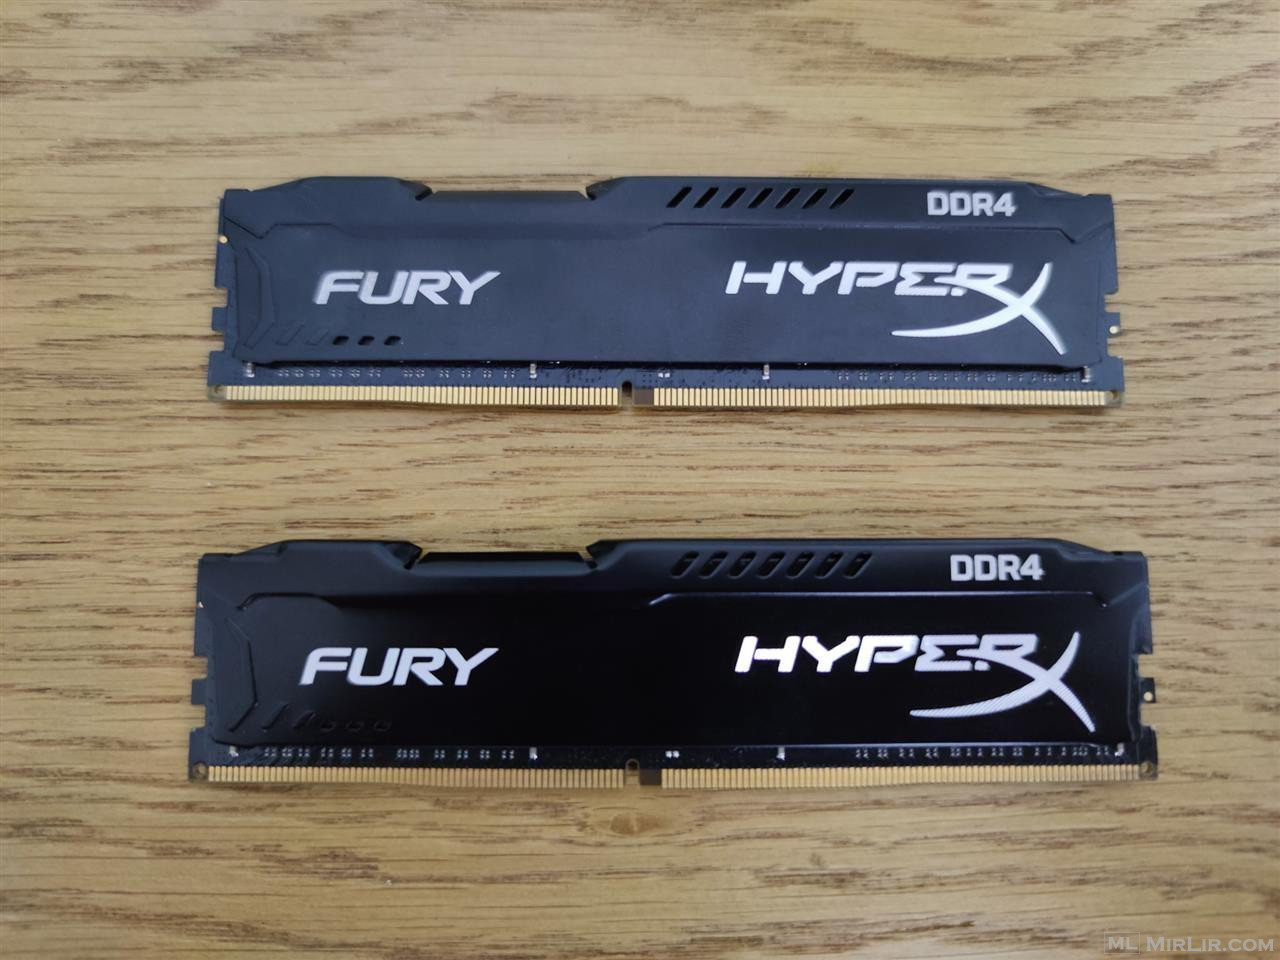 Hyperx Fury DDR4 16GB (2 x 8gb) 2133mhz